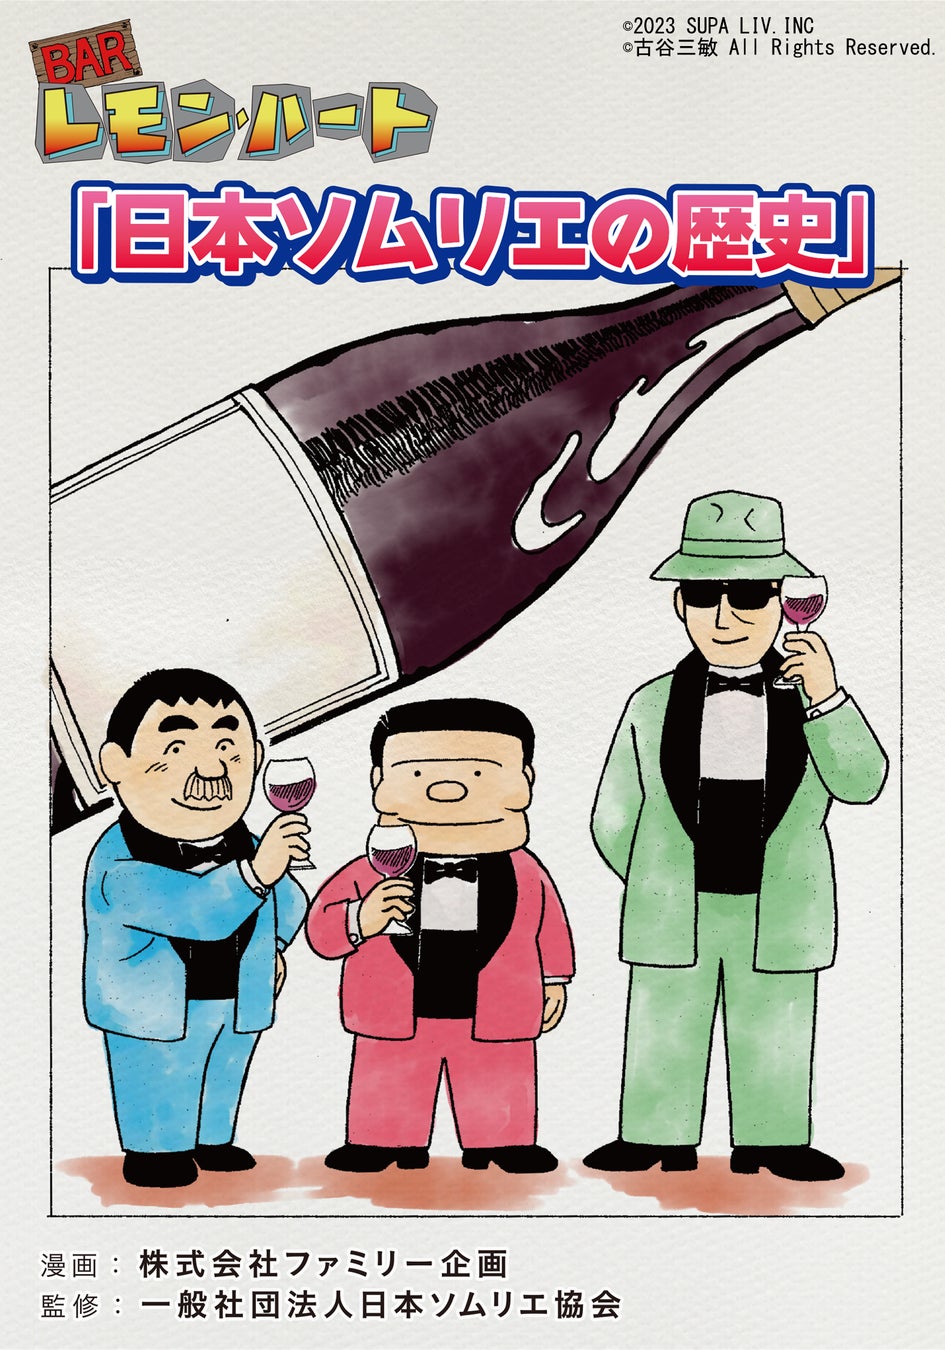 日本のワイン文化を推進してきた日本ソムリエ協会の歴史を漫画「BARレモン・ハート」の特別編をAmazon Kindleほか電子書籍書店にて無料配信を開始